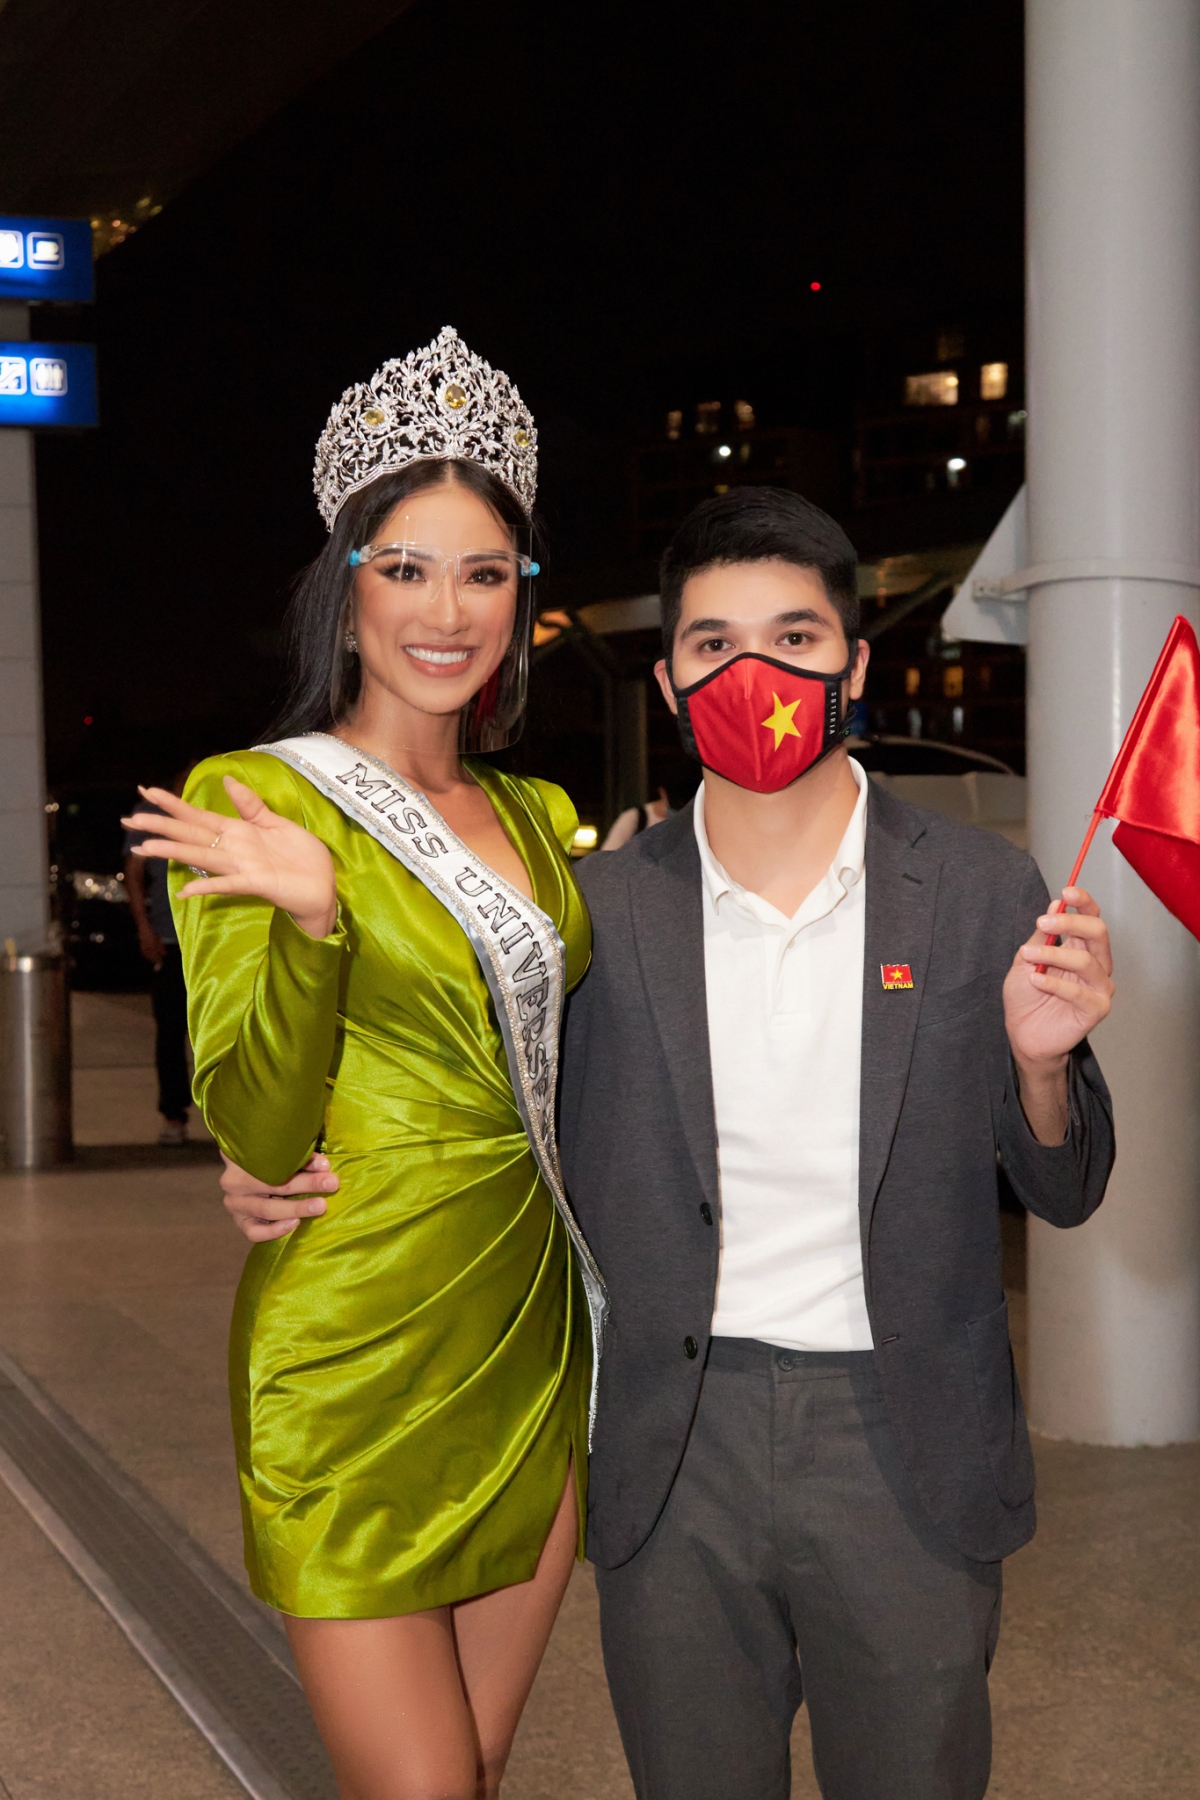 Cuộc thi Miss Universe lần thứ 70 sẽ diễn ra tại Israel, chính thức bắt đầu từ 28/11 – 12/12, nhưng ngay từ bây giờ, không khí của cuộc thi đã bắt đầu nóng dần lên với những đại diện xuất sắc đến từ các quốc gia khác nhau trên thế giới./.